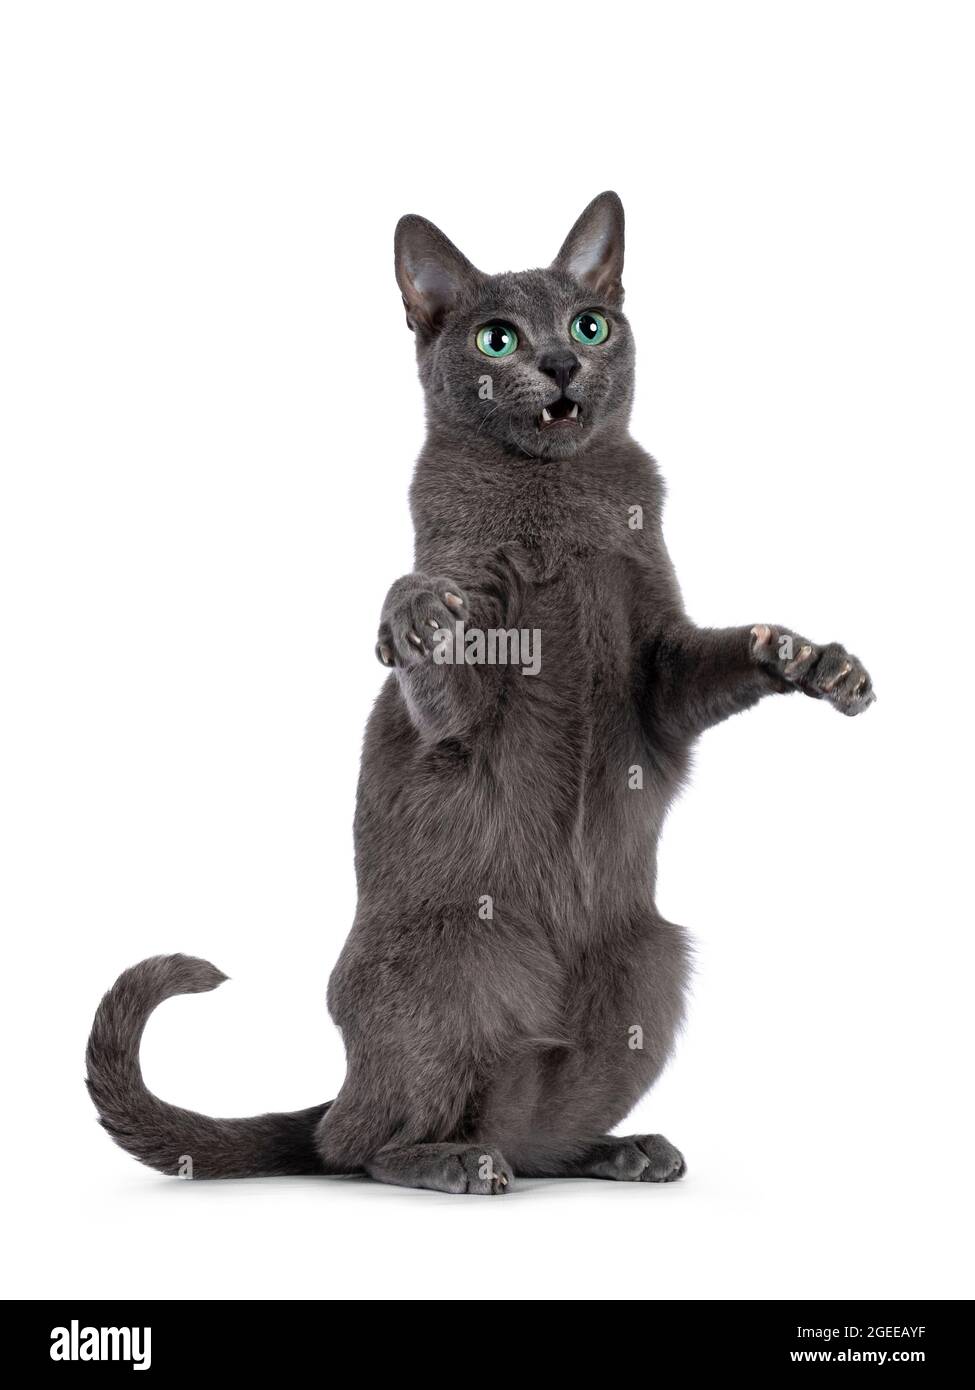 Jeune chat Korat à bout argenté, debout dans une posture dansante sur les pattes arrière. Regarder vers l'appareil photo avec des yeux vert vif et l'attitude. Isolé sur un blanc Banque D'Images